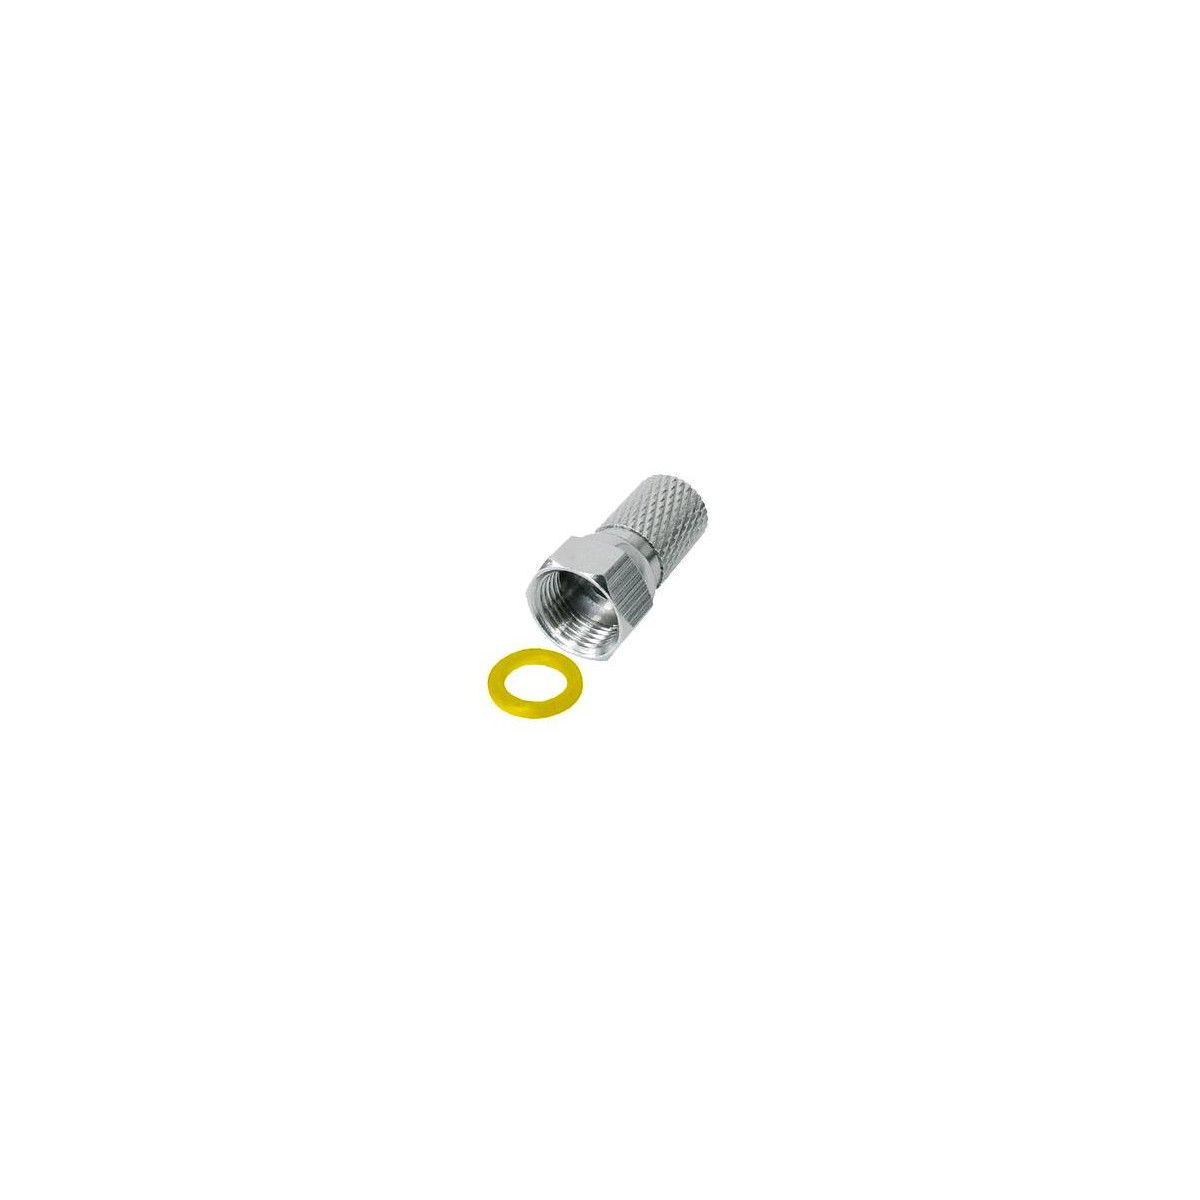 More about Konektor F 7 mm s gumovým těsněním